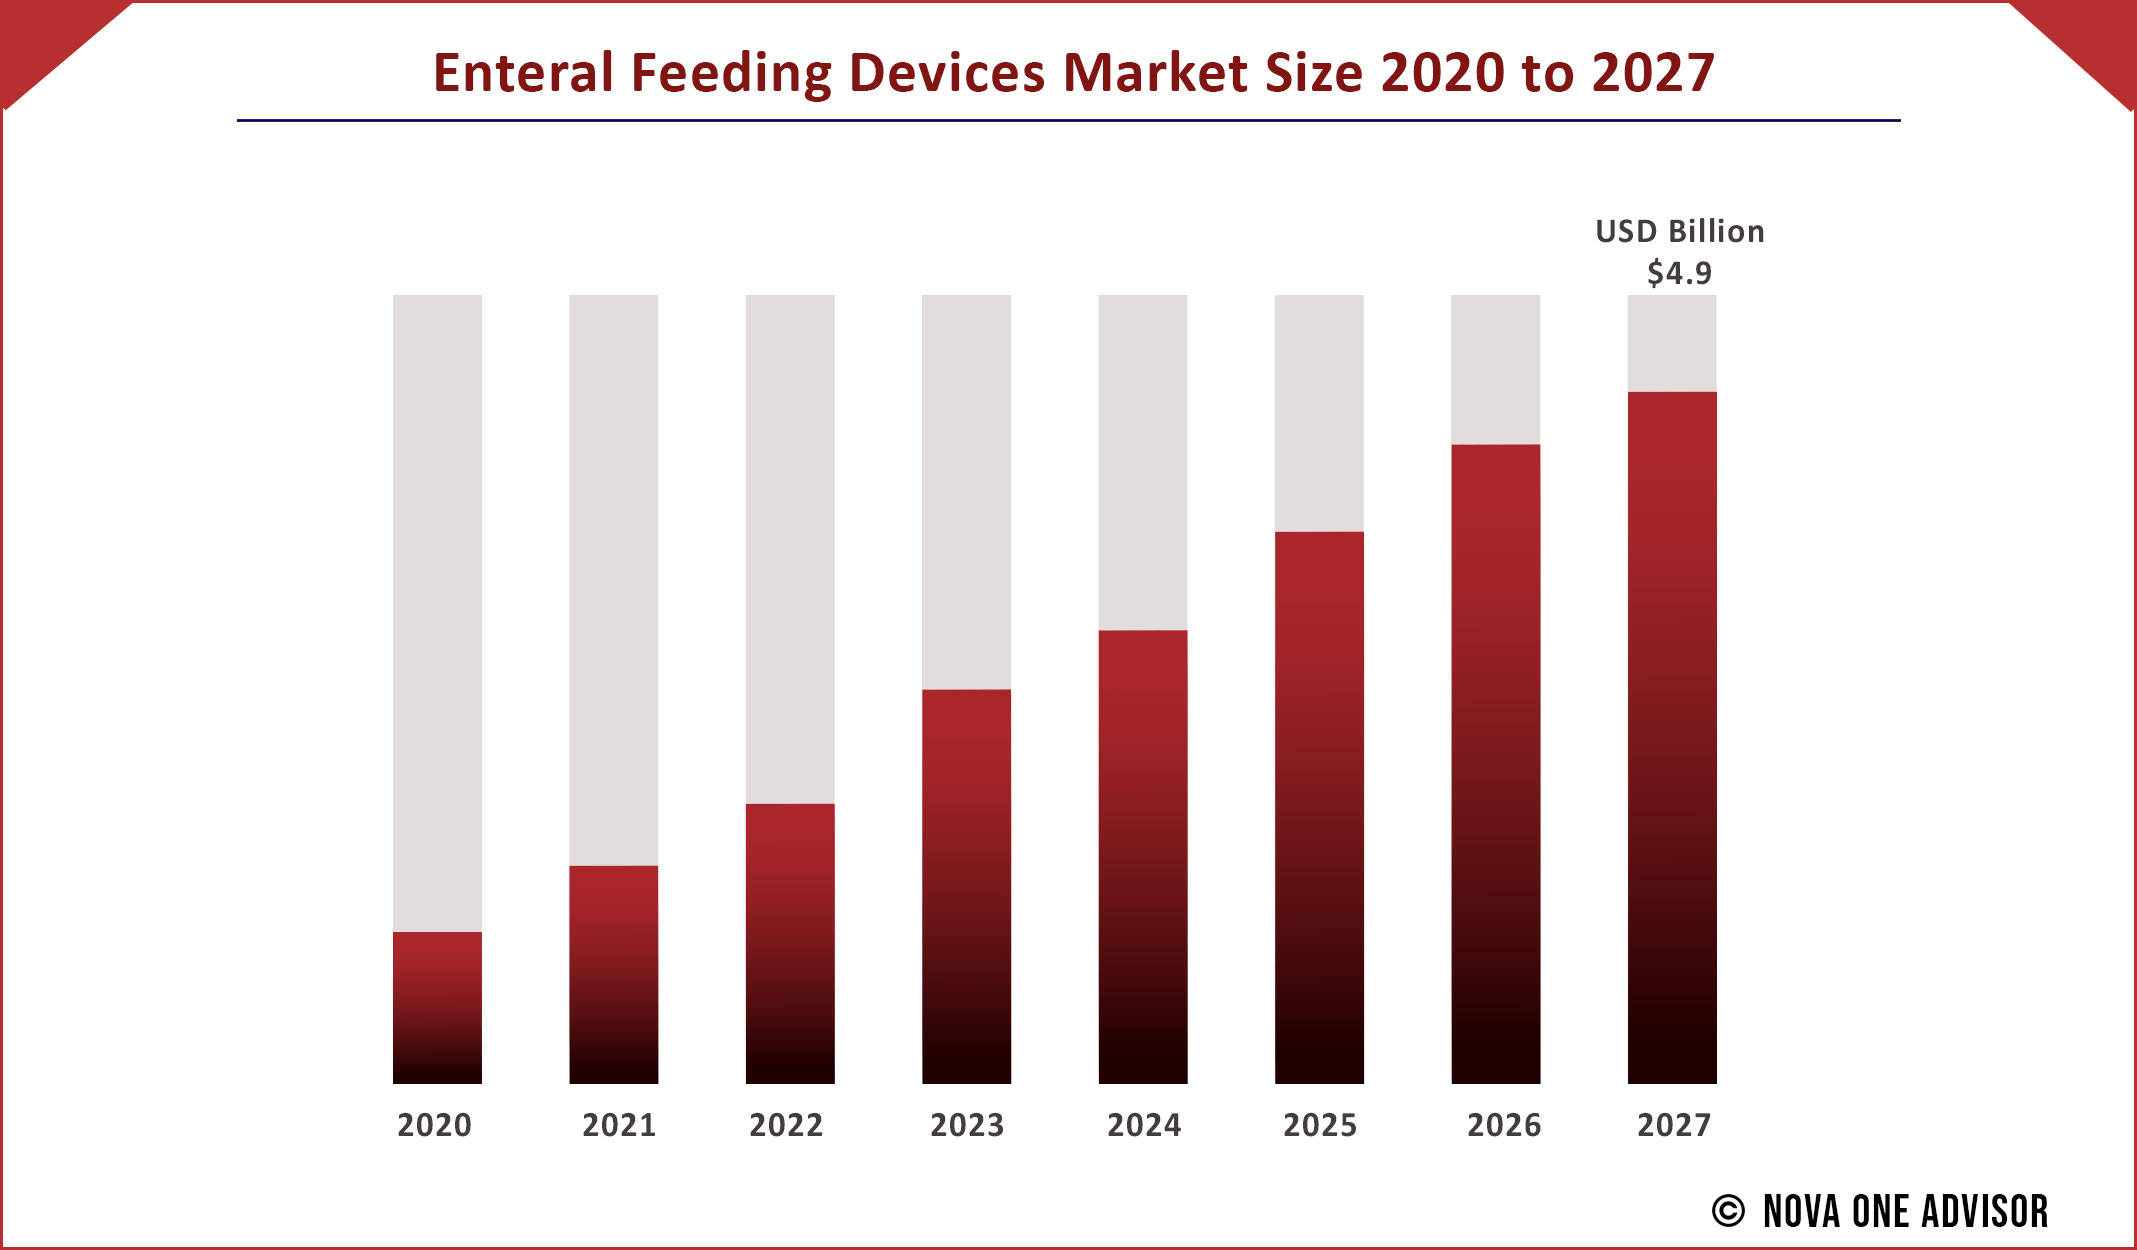 Enteral Feeding Devices Market Size 2020 to 2027